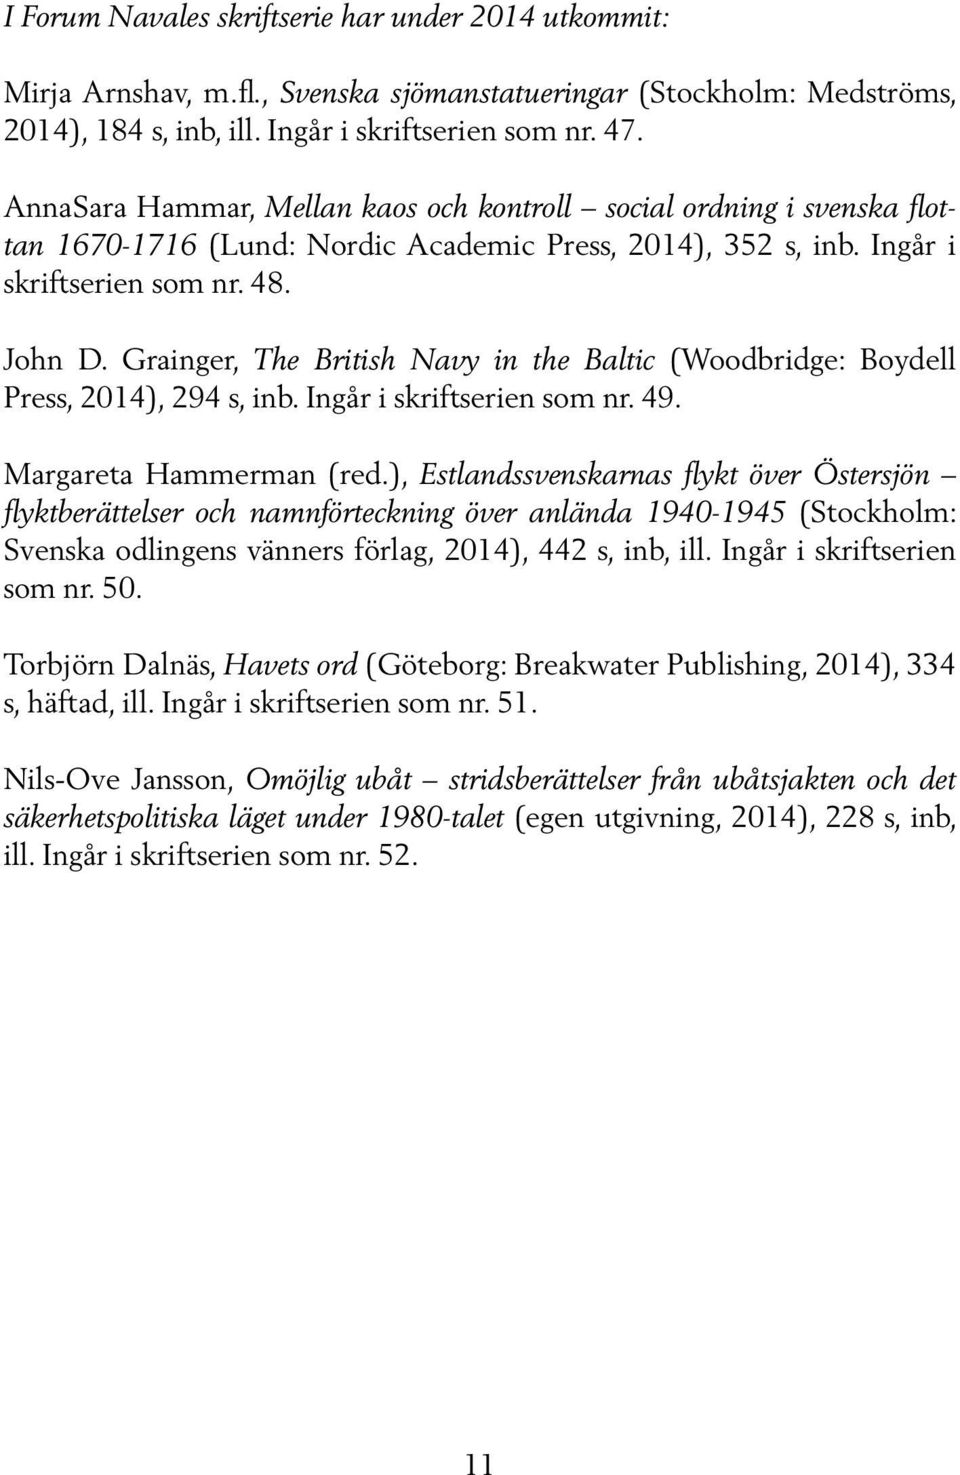 Grainger, The British Navy in the Baltic (Woodbridge: Boydell Press, 2014), 294 s, inb. Ingår i skriftserien som nr. 49. Margareta Hammerman (red.